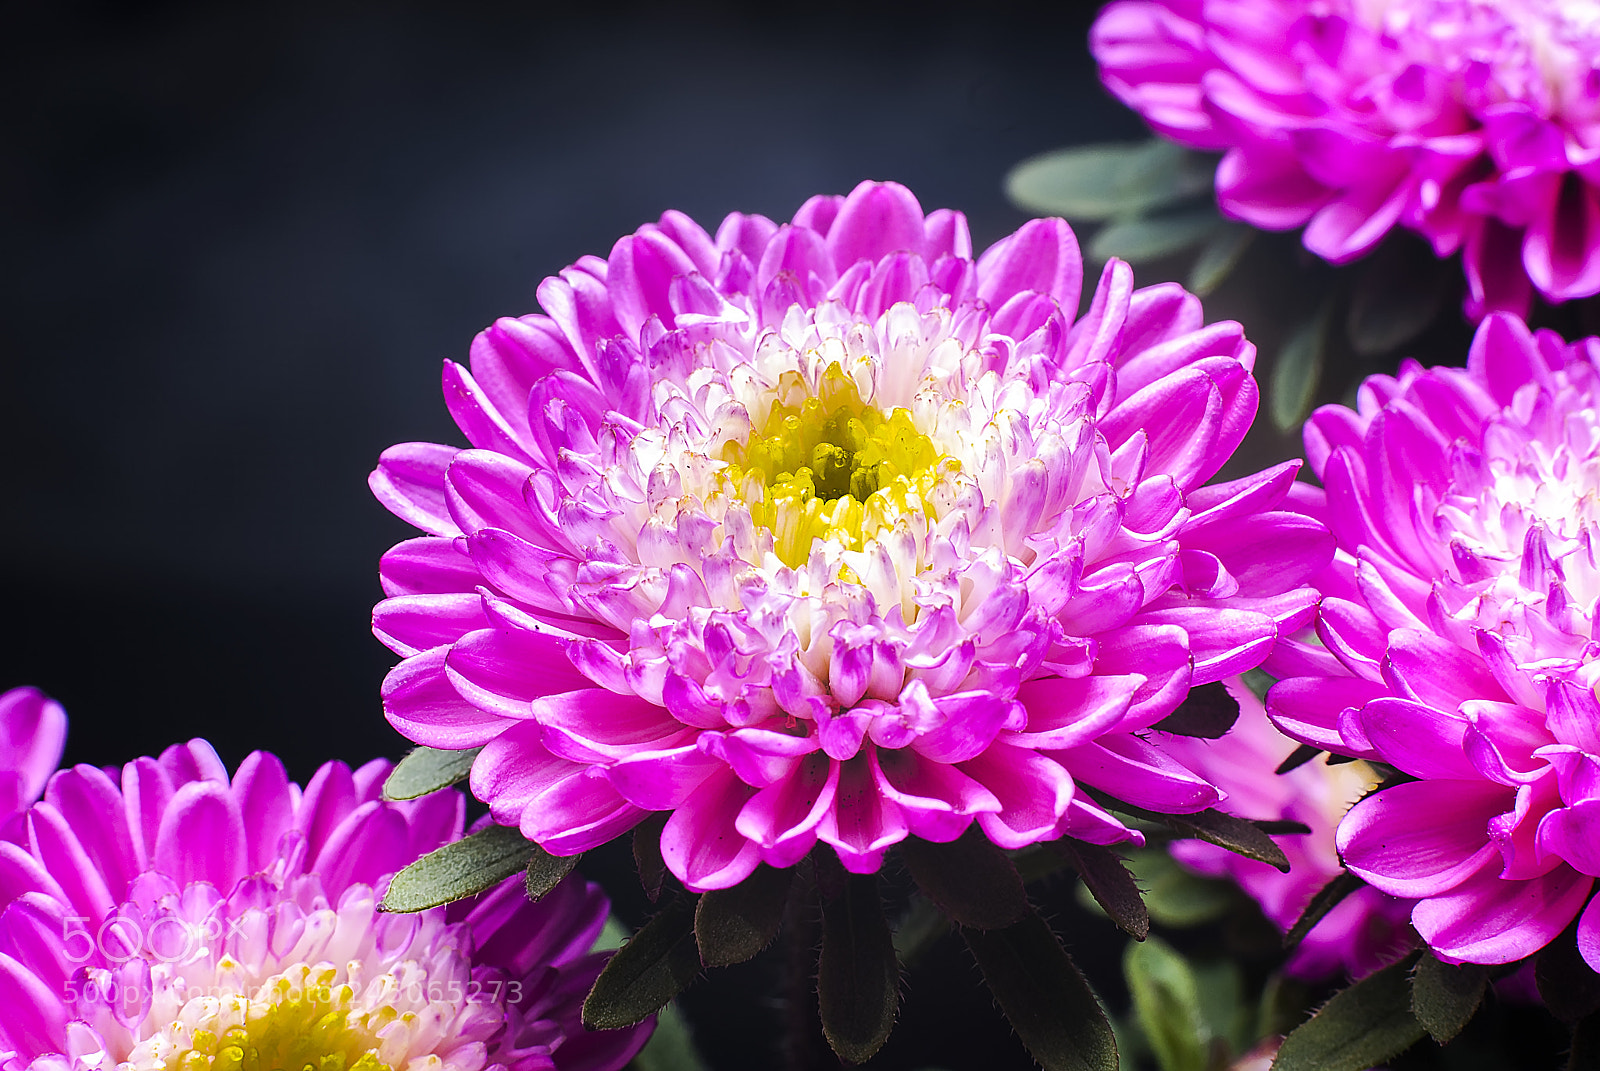 Nikon D200 sample photo. Daisy flower photography